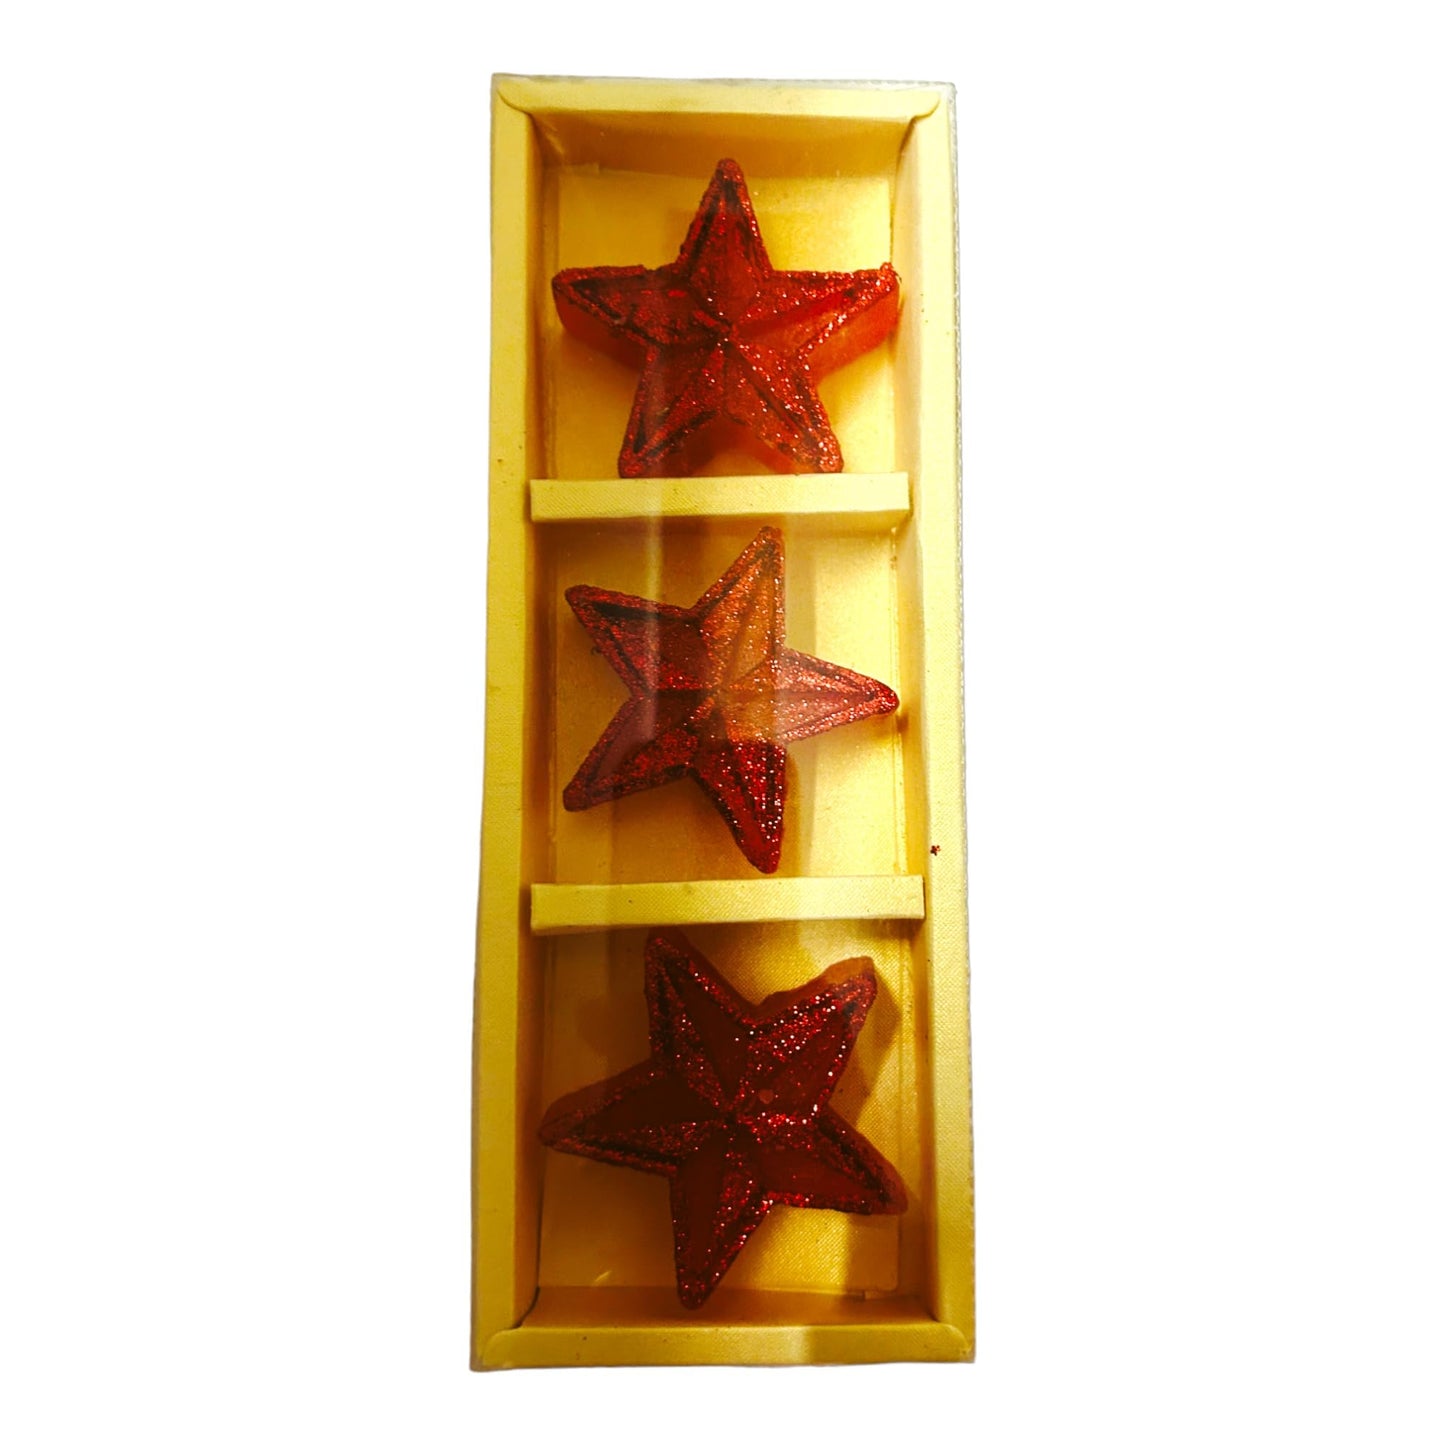 पूजाहोम सजावट के लिए स्टार आकार की मोमबत्ती, घर, ऑफिस के लिए दिवाली की सजावट के लिए 6 मोमबत्तियों का पैक (लाल रंग)